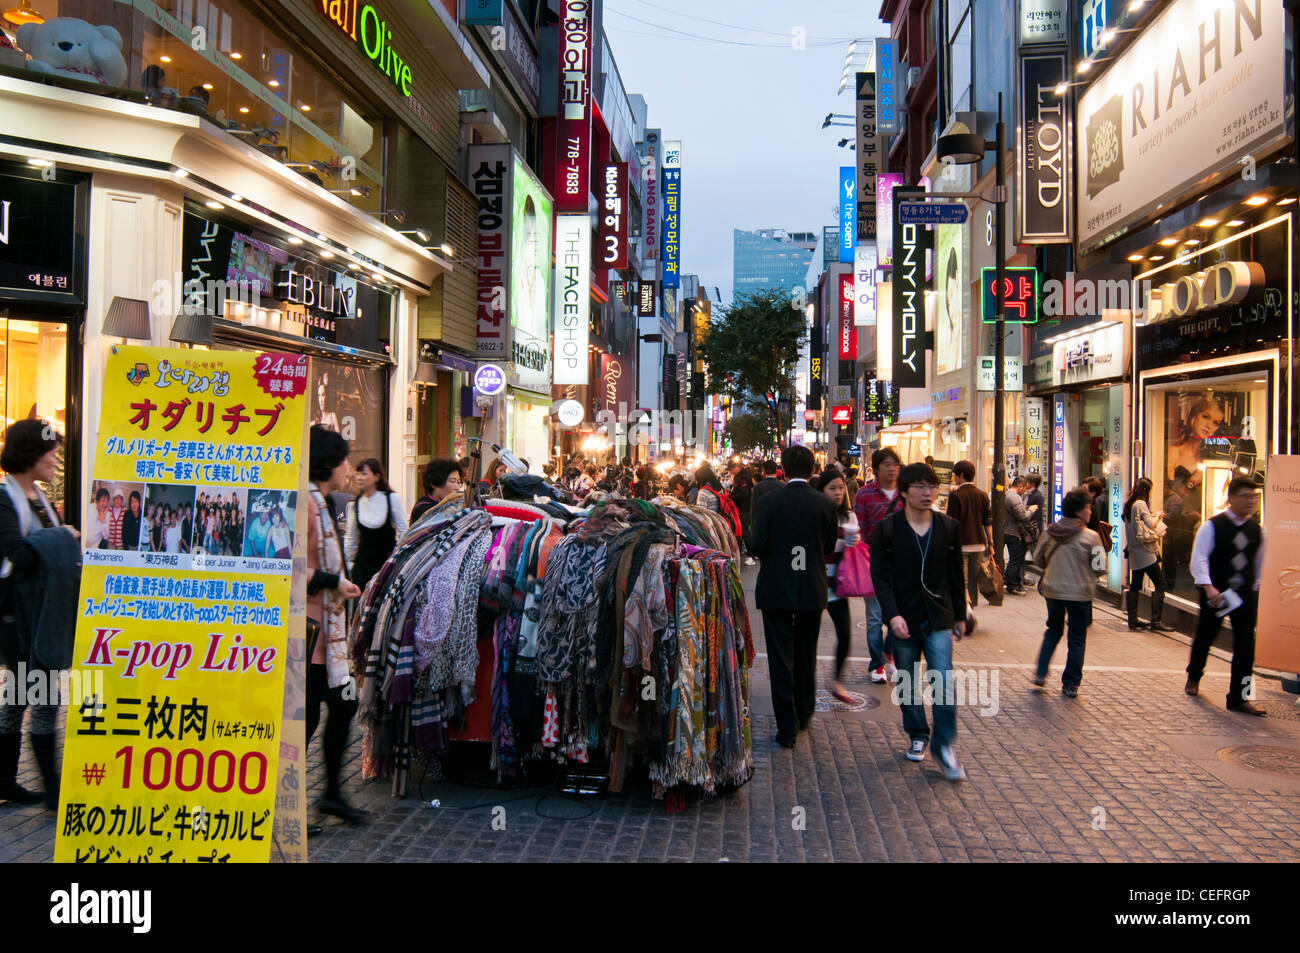 Les étals de rue divers articles de mode dans la soirée dans le populaire quartier commerçant de Gangnam à Séoul, Corée Banque D'Images